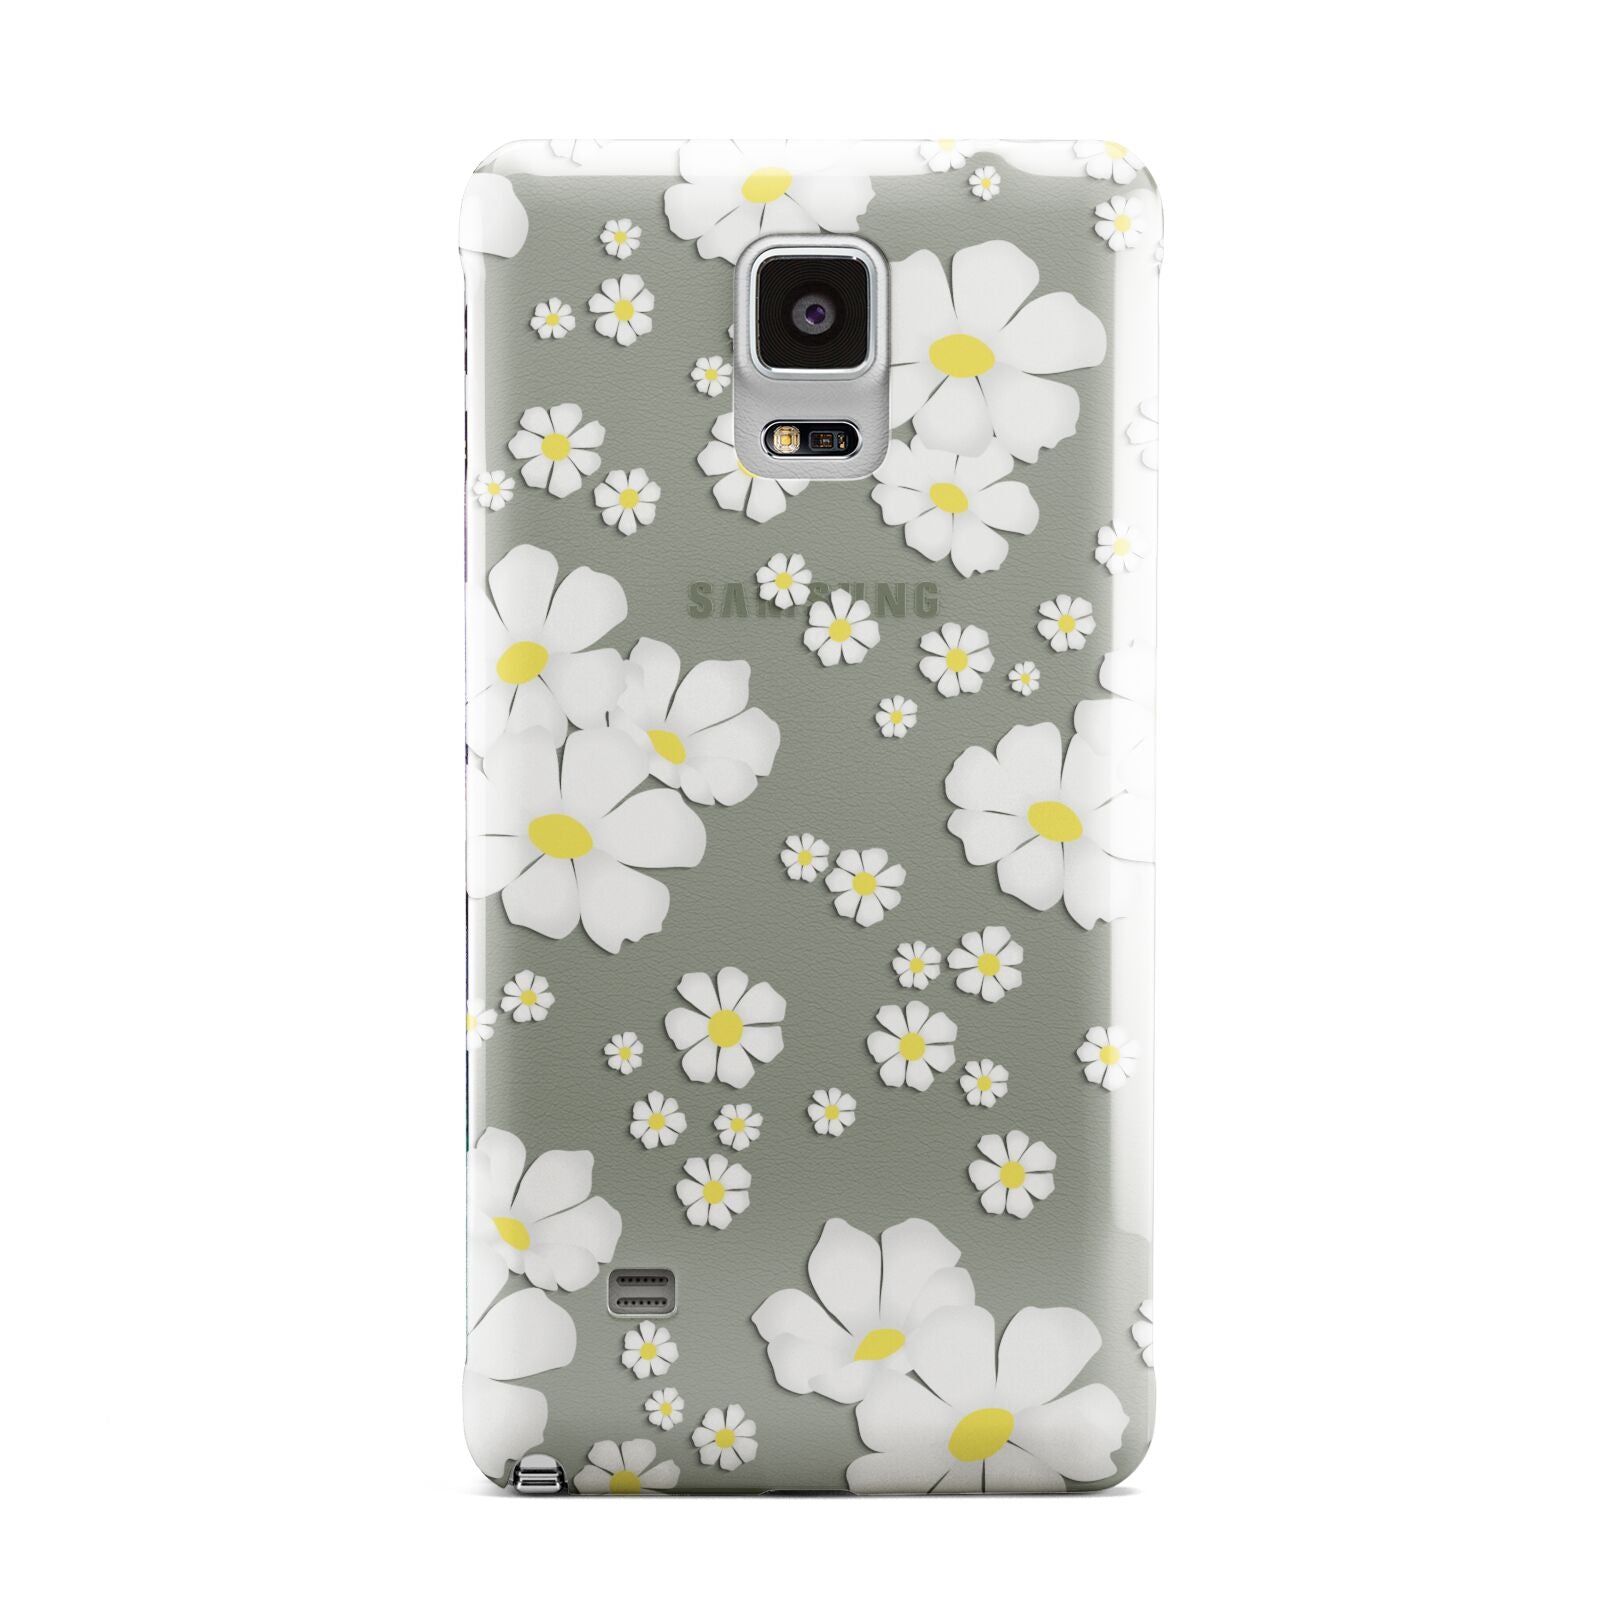 White Daisy Flower Samsung Galaxy Note 4 Case